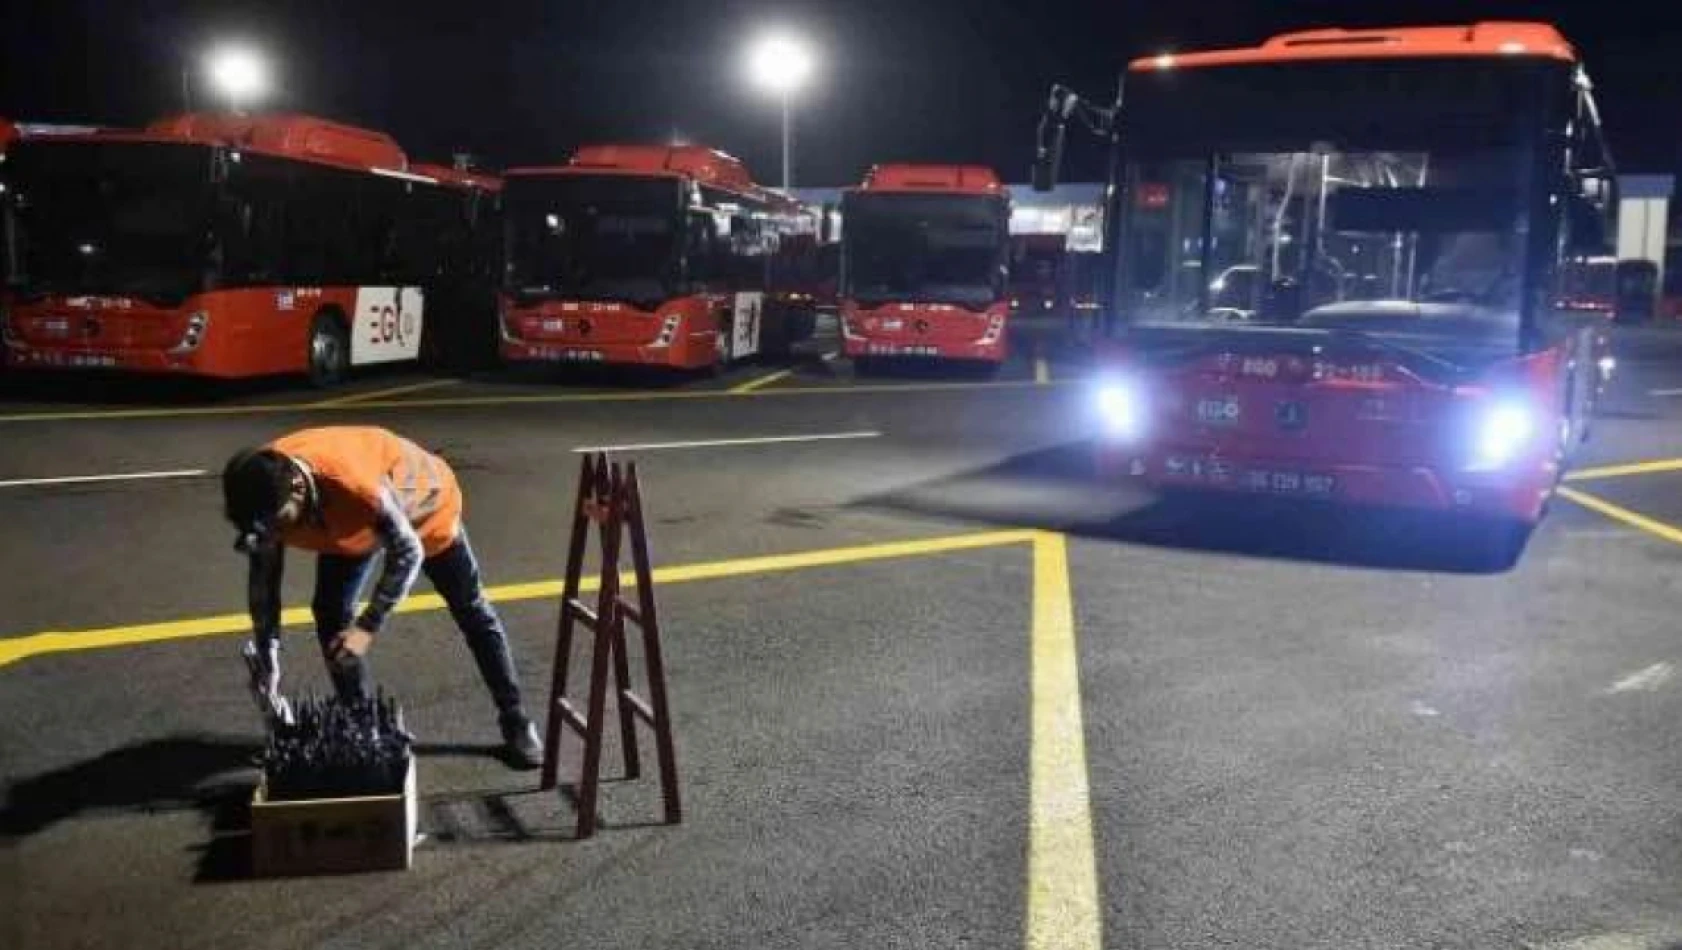 Engelliye 'İn aşağı, bindiğine say' diyen otobüs şoförünün fiiline 142 bin lira ceza